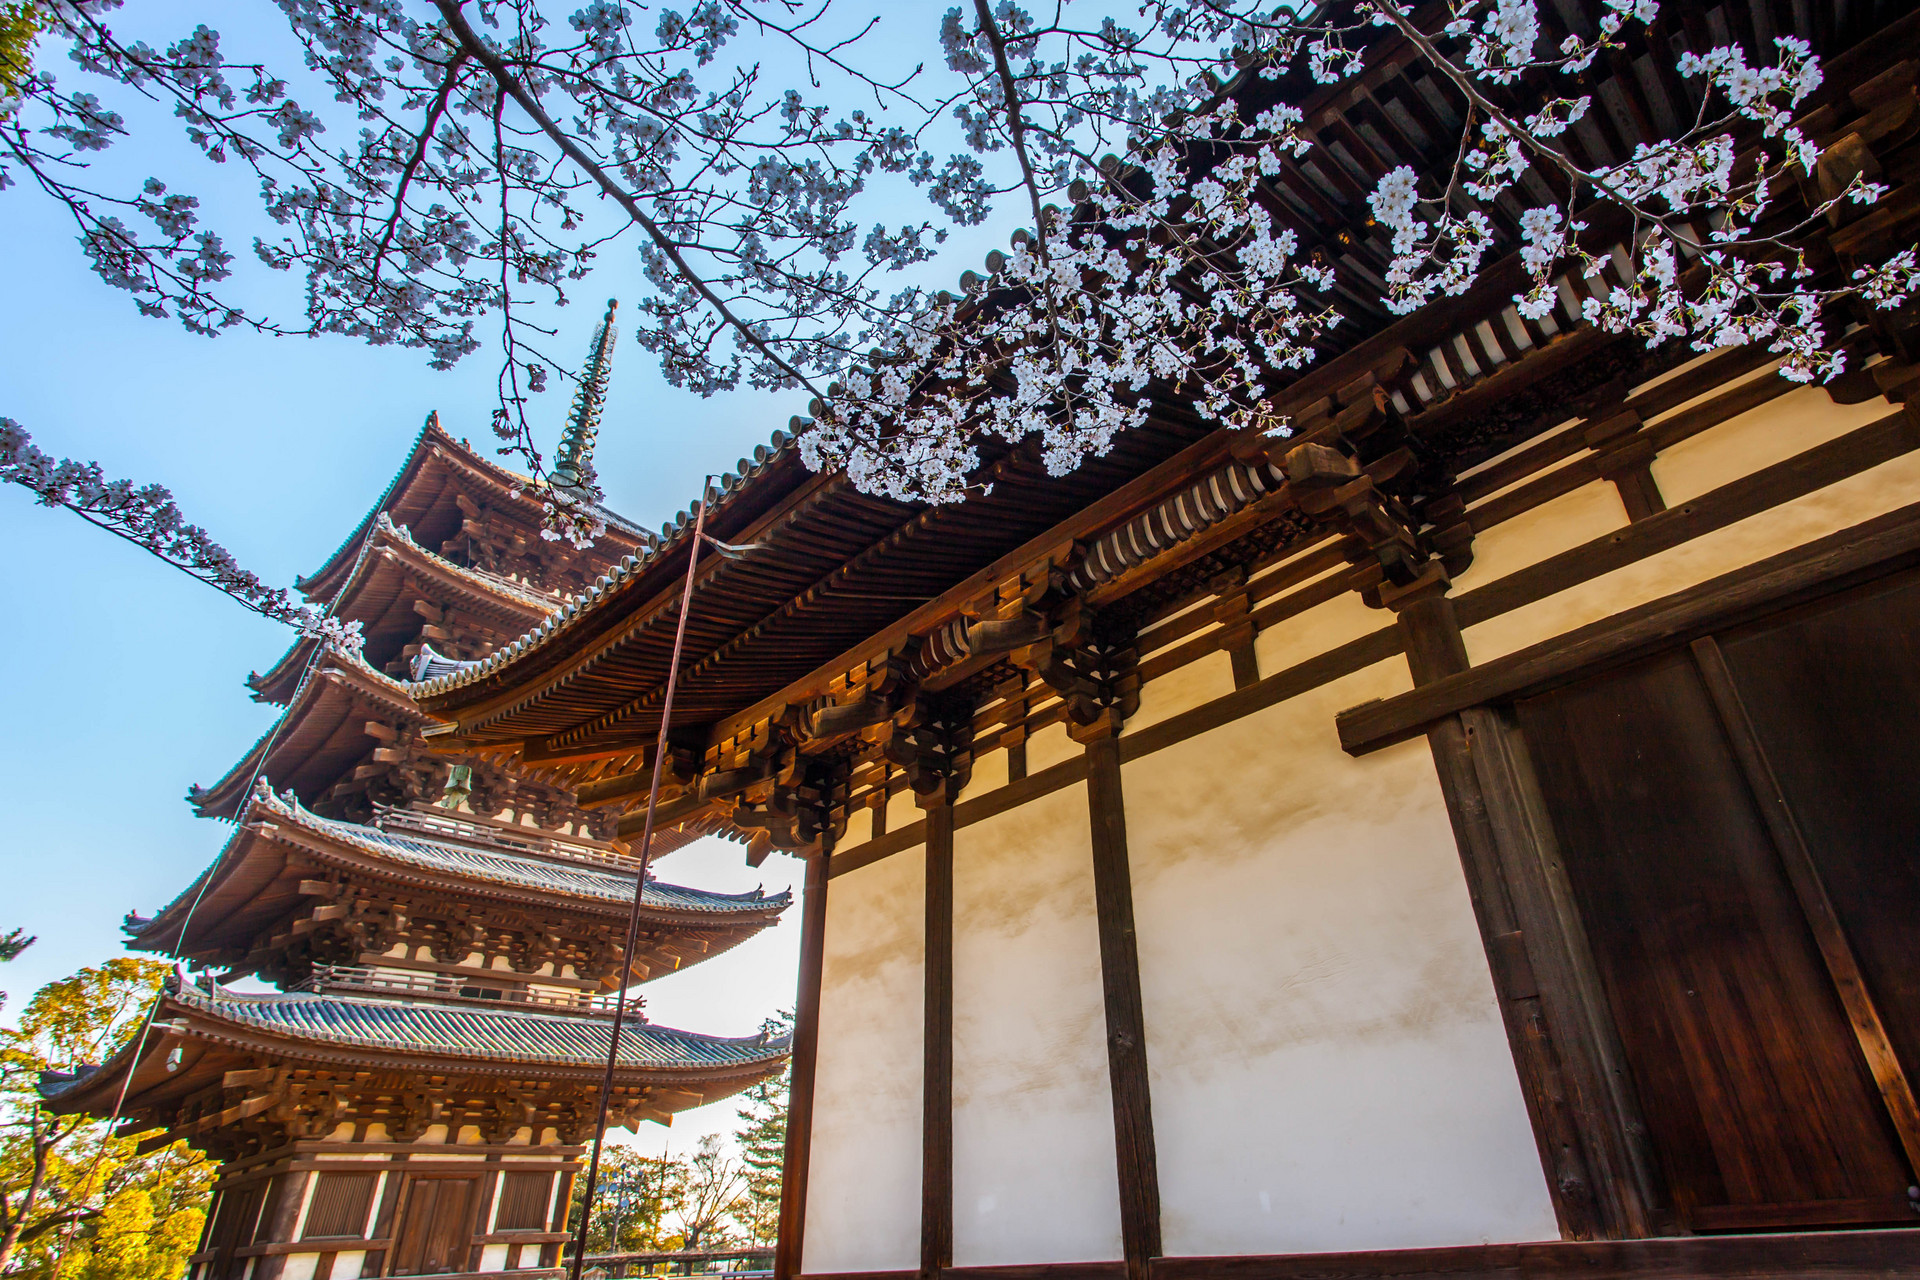 行走在奈良,处处都是似曾相识的古迹,这样的建筑风格在中国许多历史